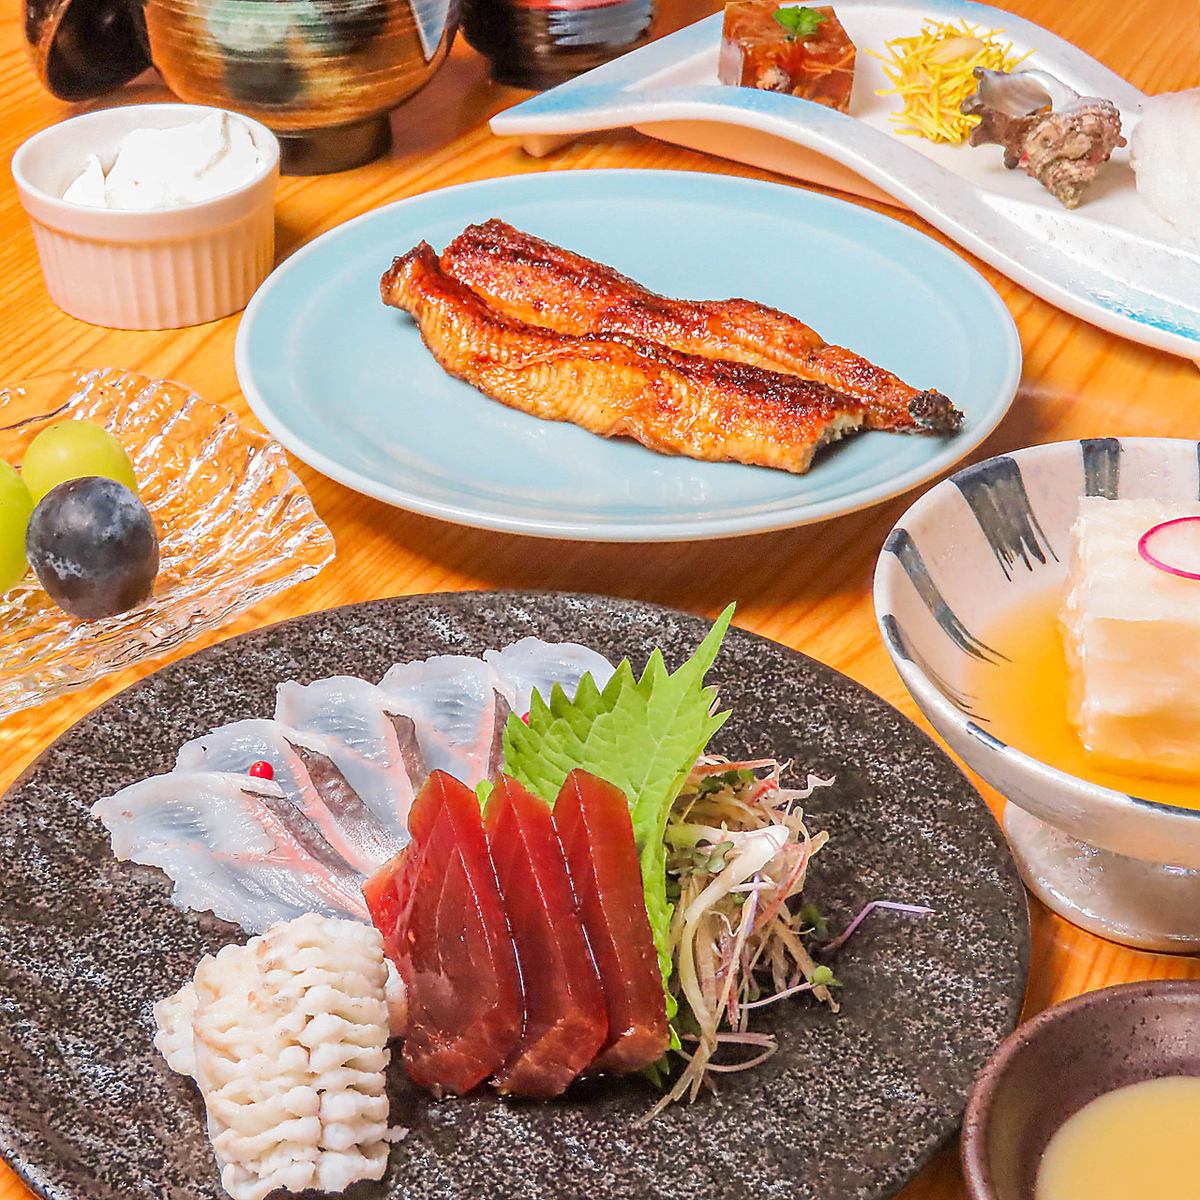 関西風の鰻重と、刺身などの稀少な鰻一品料理をご堪能ください。